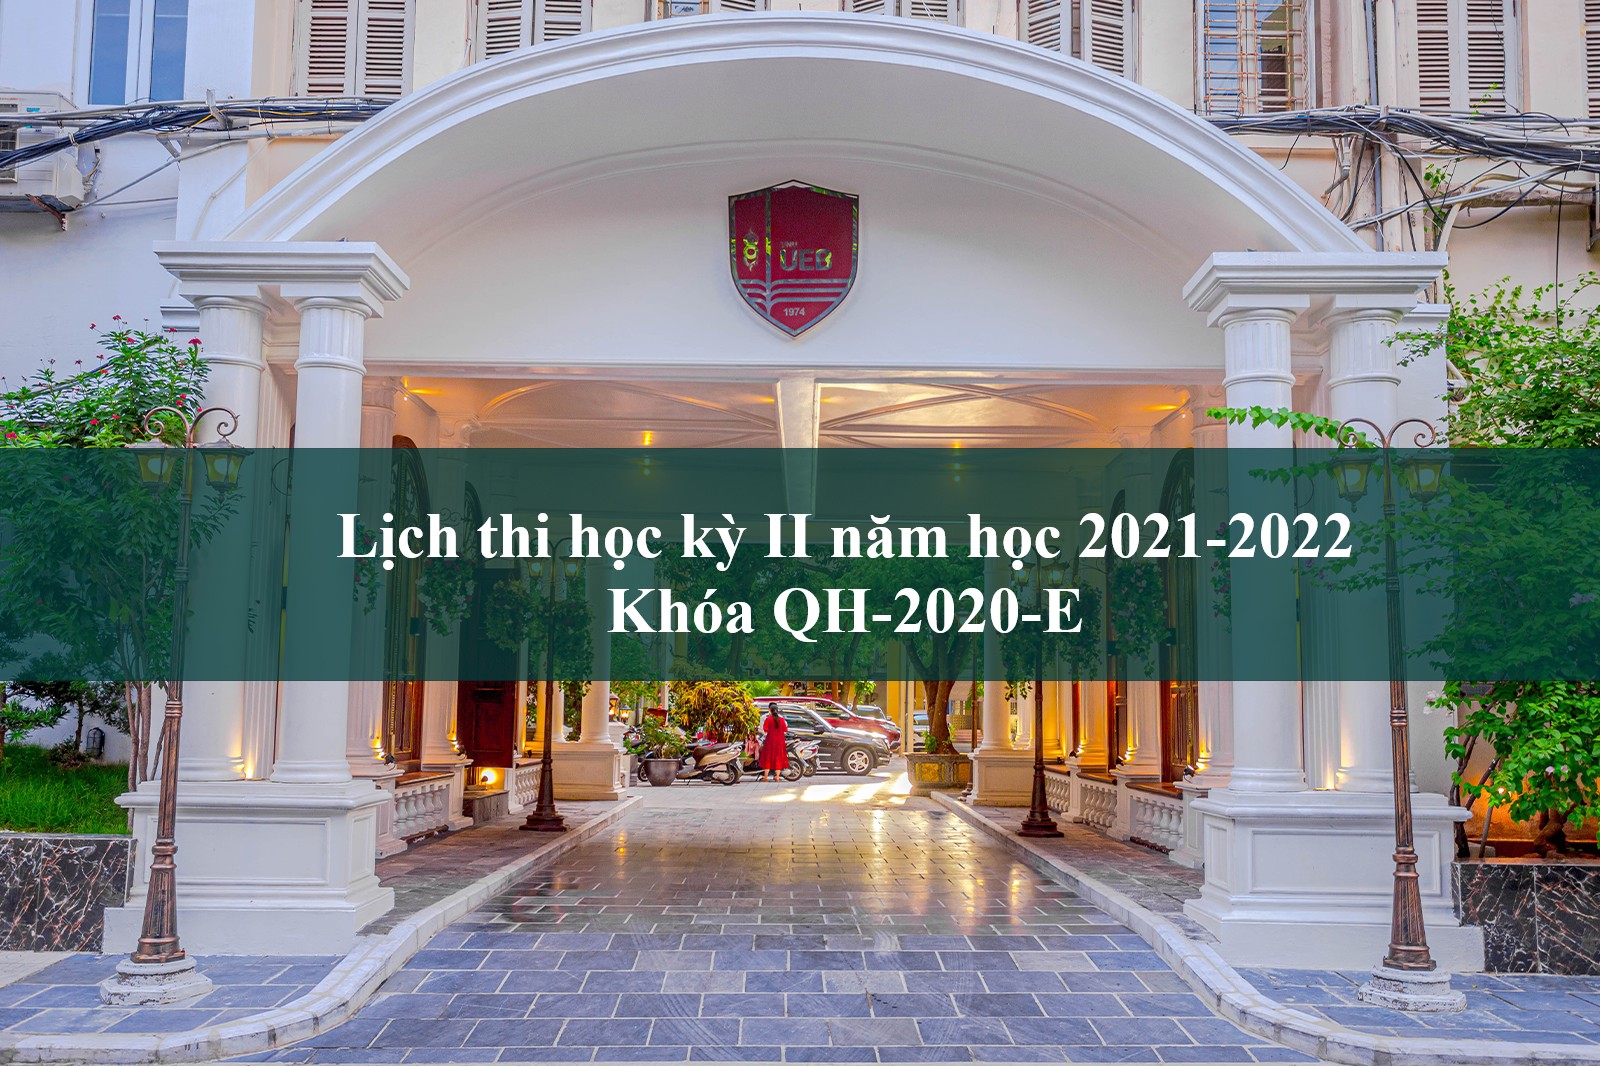 Lịch thi học kỳ II năm học 2021-2022 Khóa QH-2020-E, Bậc đào tạo Đại học